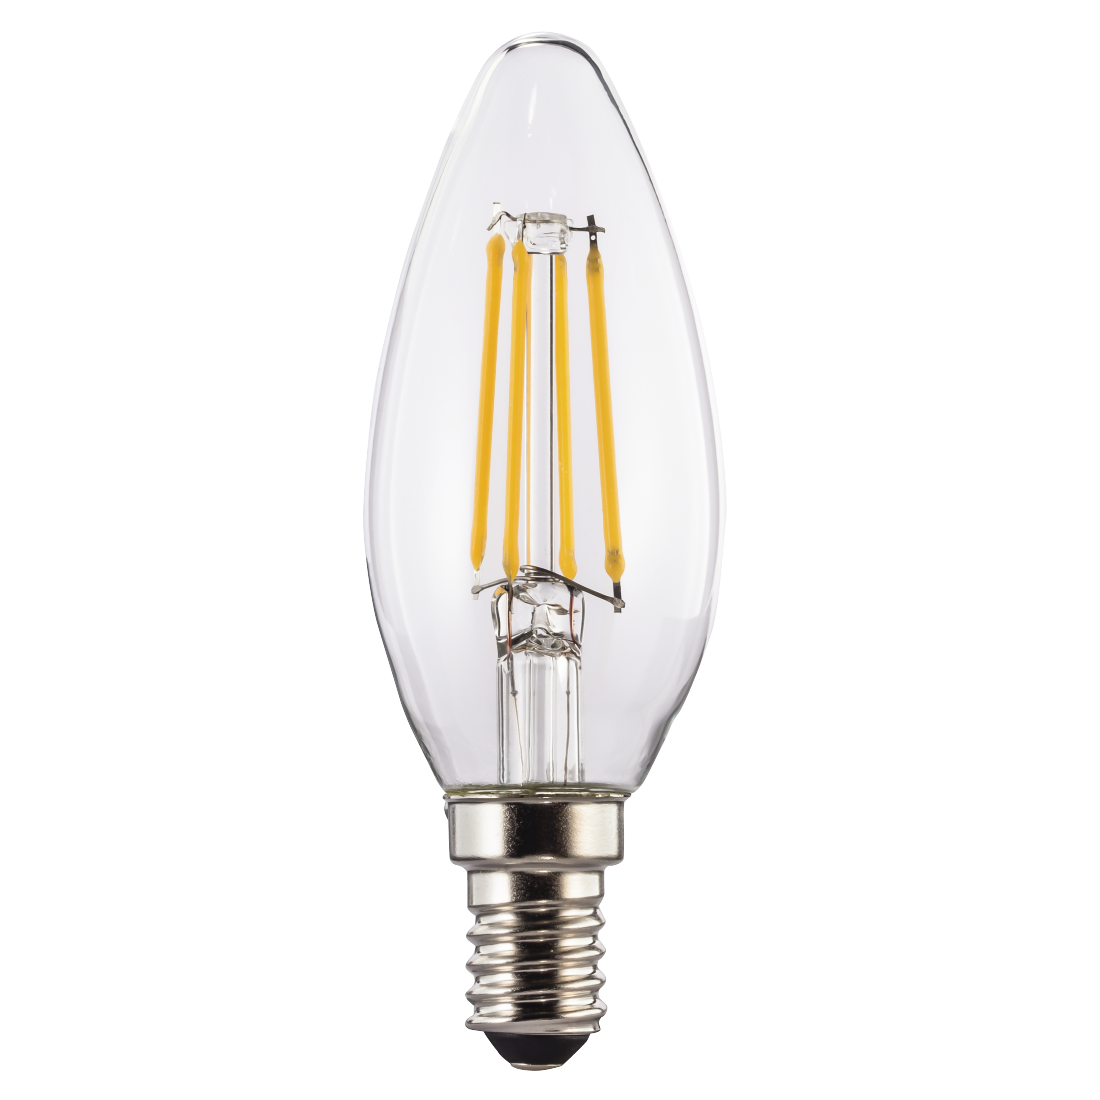 abx High-Res Image - Xavax, Ampoule filament LED, E14, 470lm rempl. ampoule bougie 40W, blc chaud